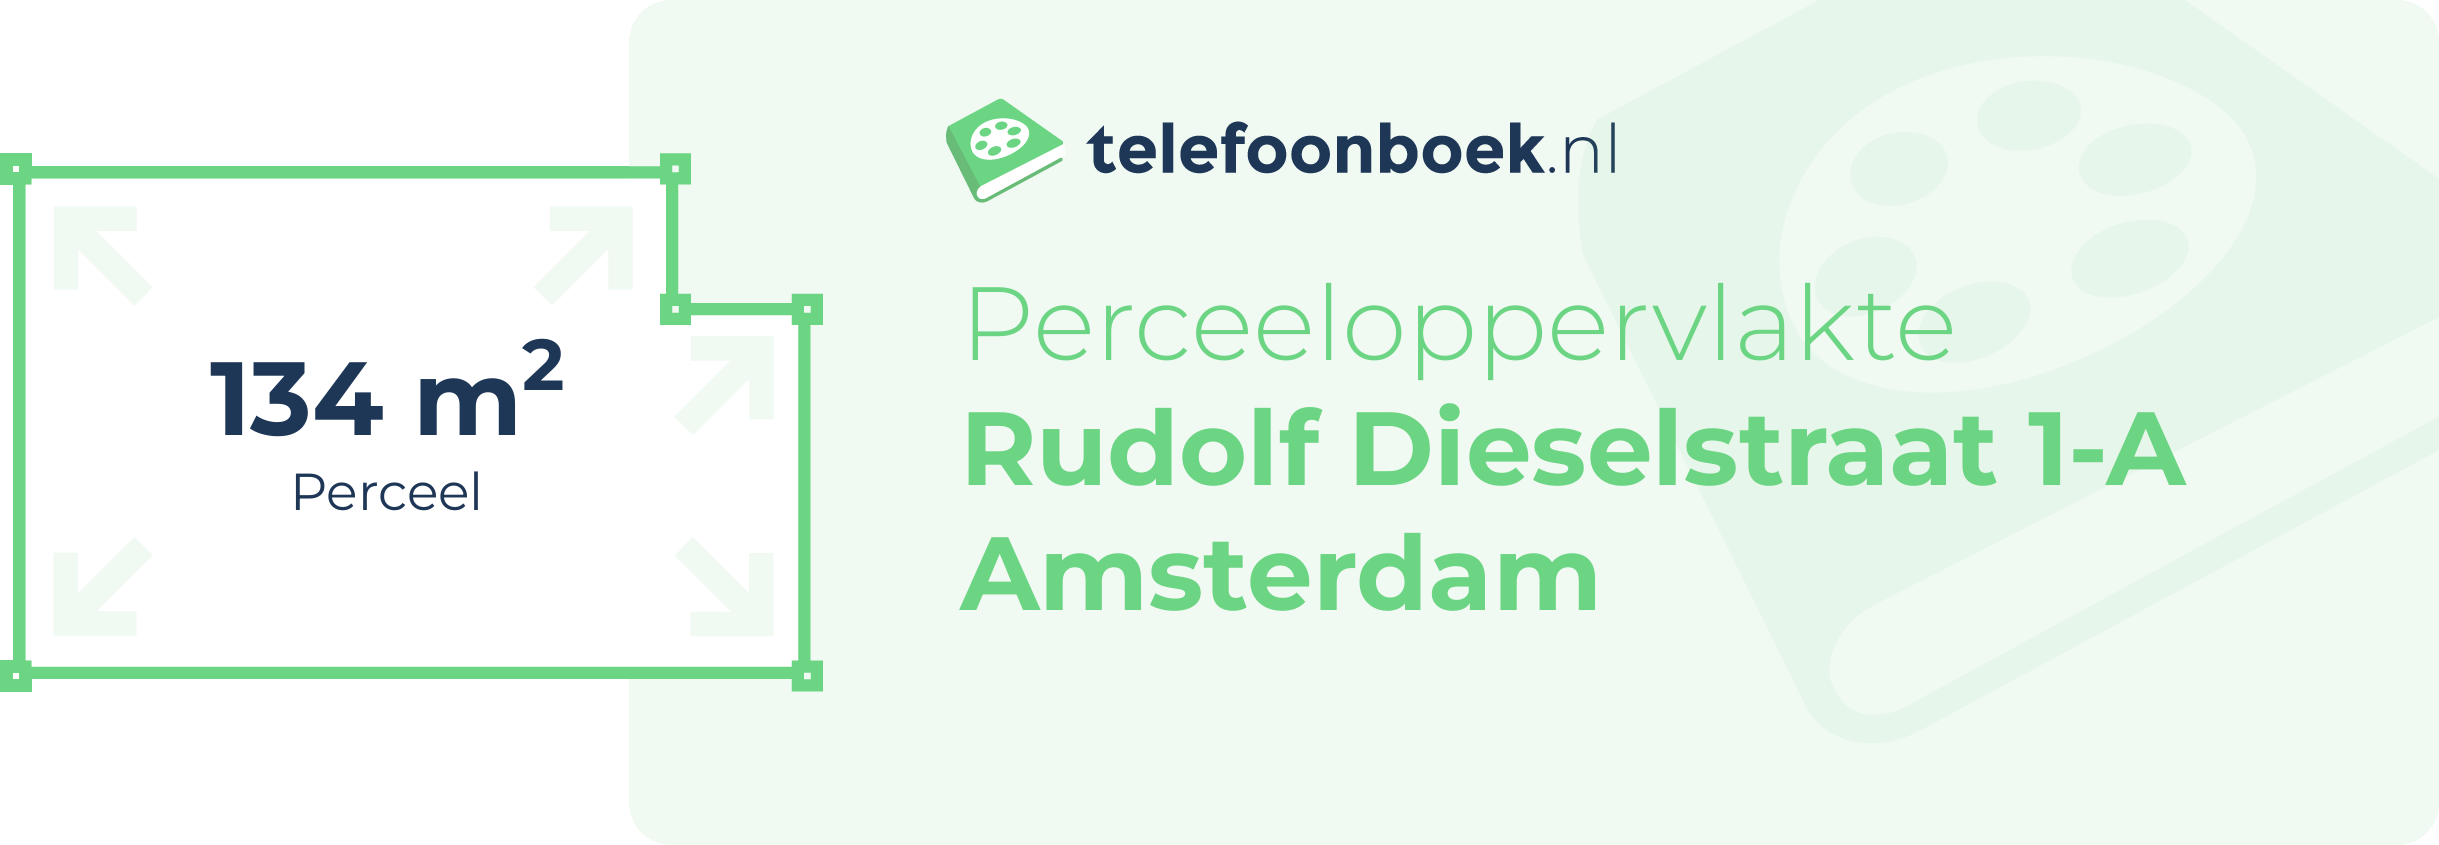 Perceeloppervlakte Rudolf Dieselstraat 1-A Amsterdam